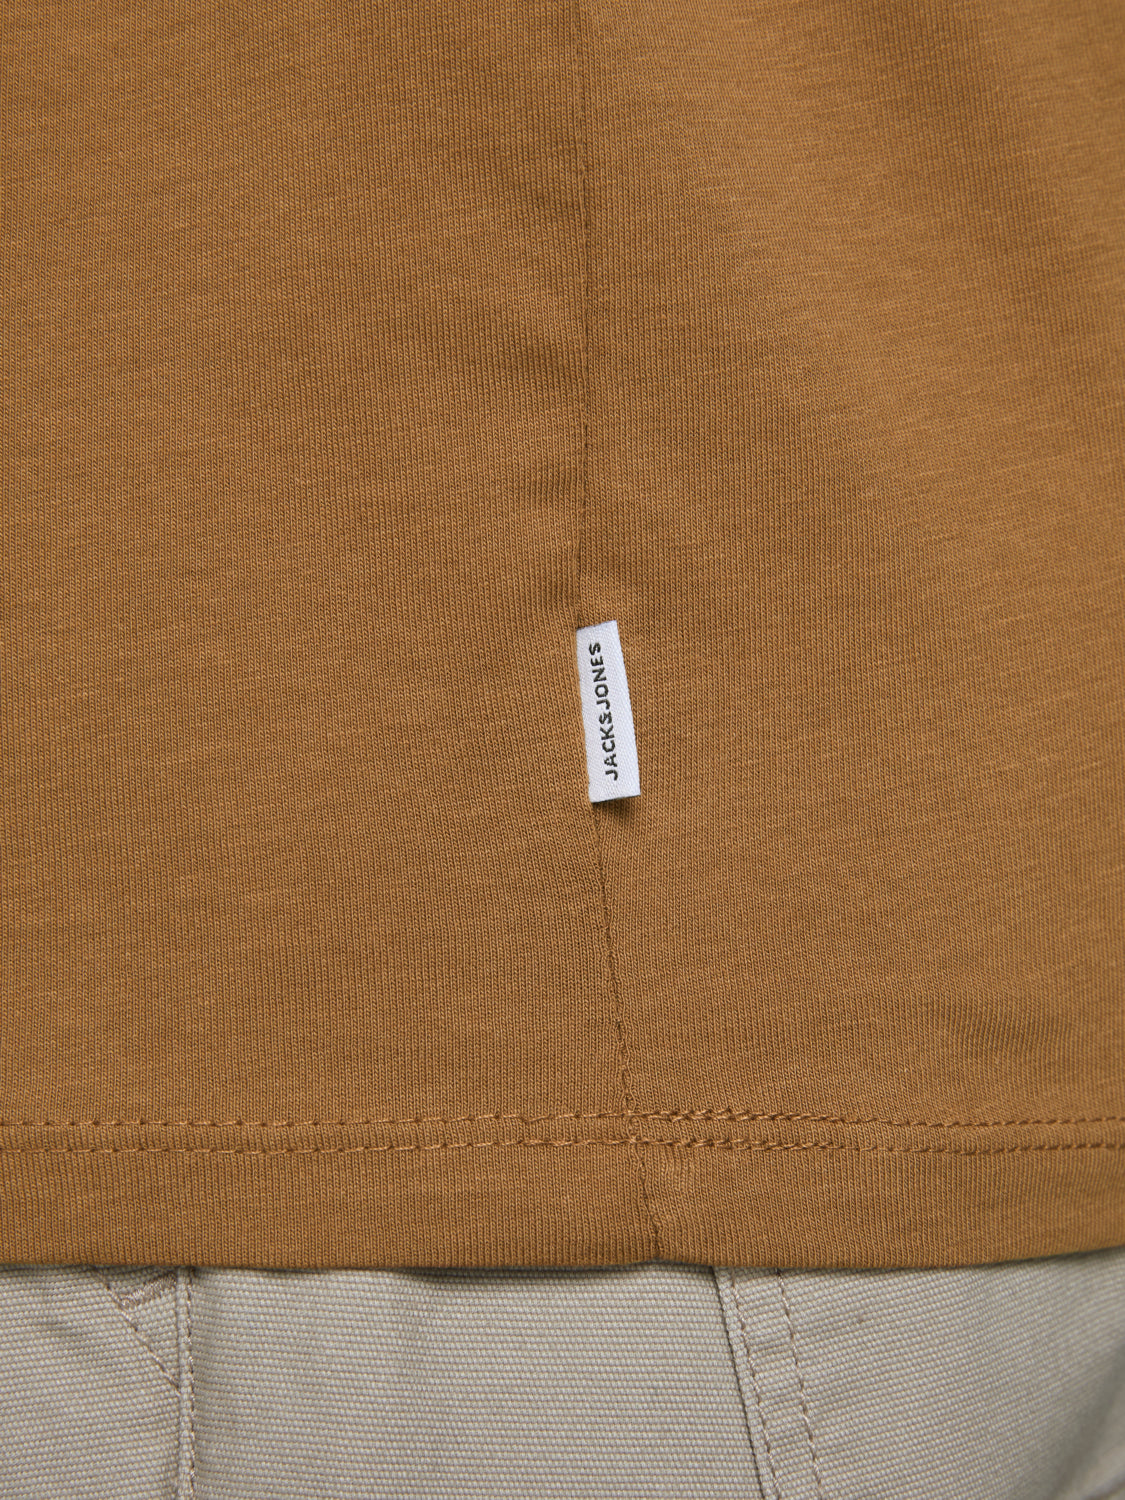 Camiseta básica de algodón JJEORGANIC - Marrón